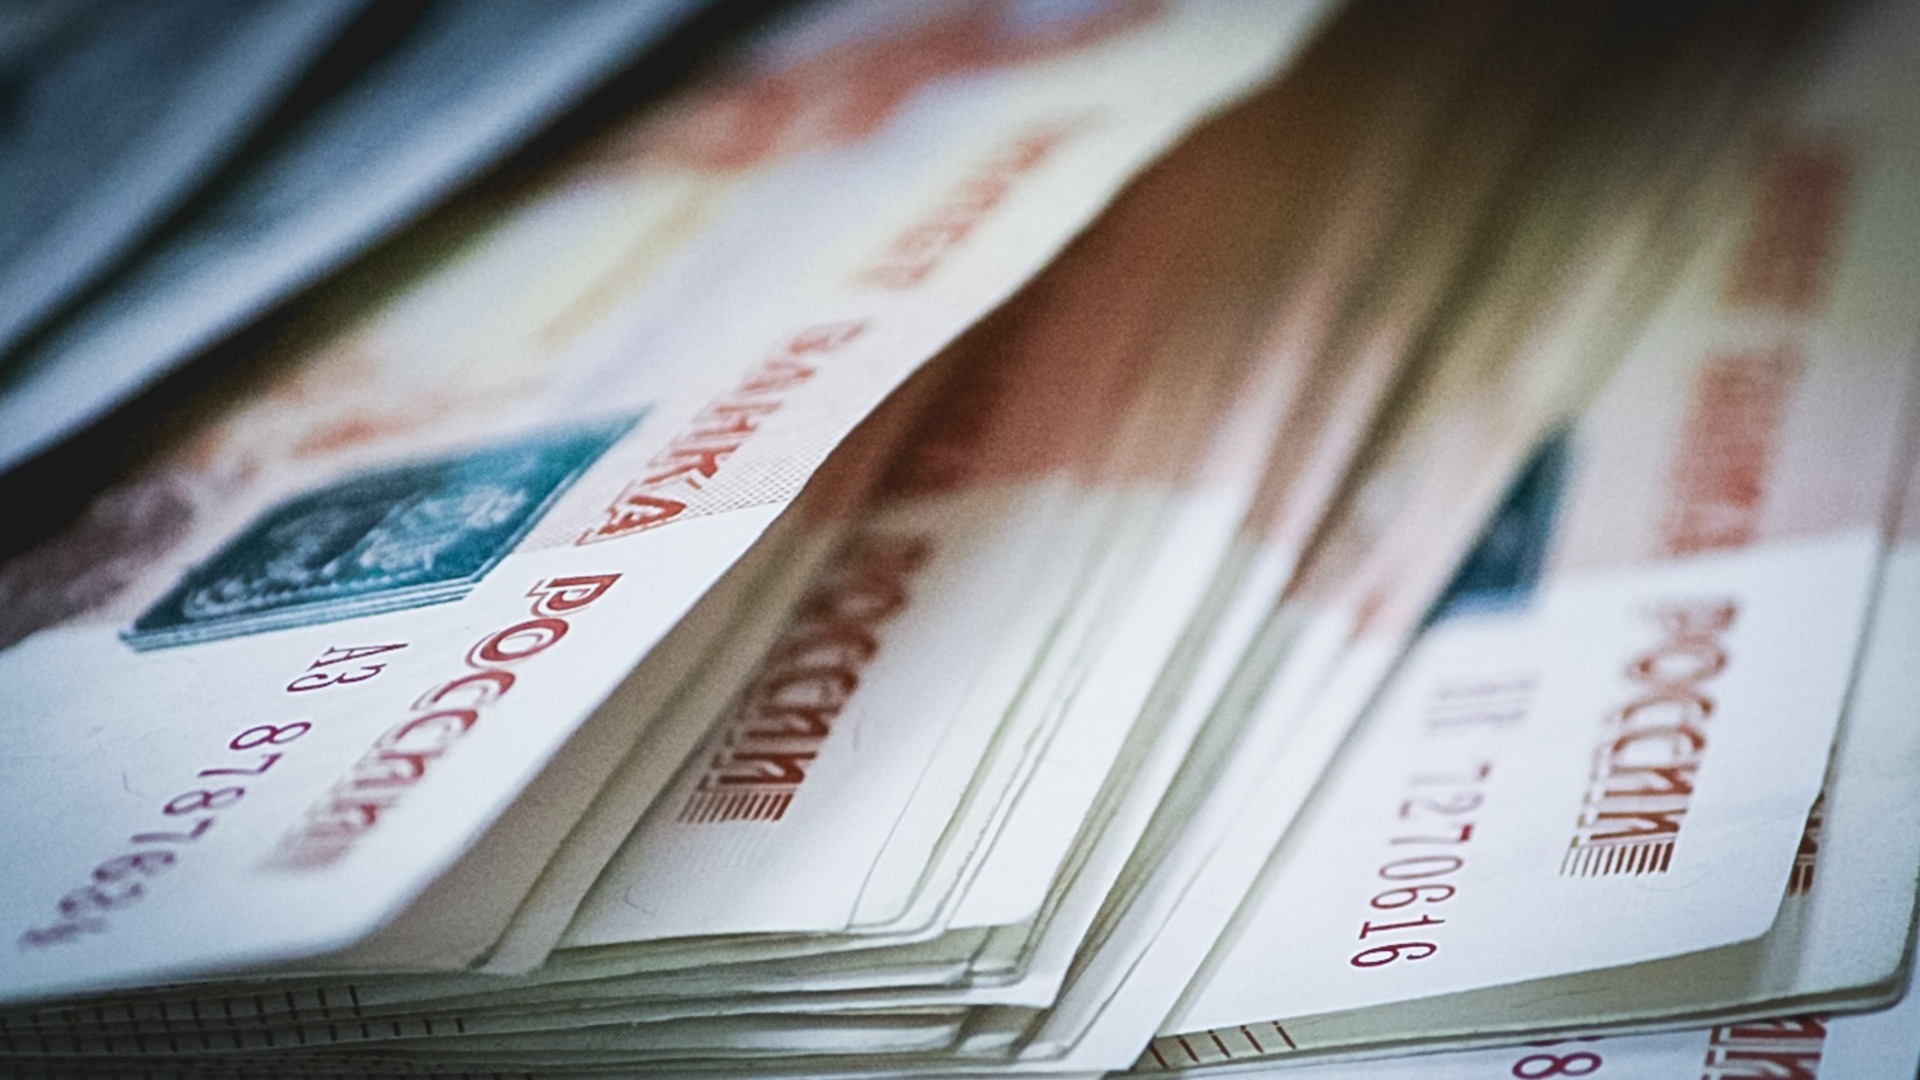 ФАС оштрафовала Сбербанк на 600 тысяч рублей за неполную информацию в рекламе кредита